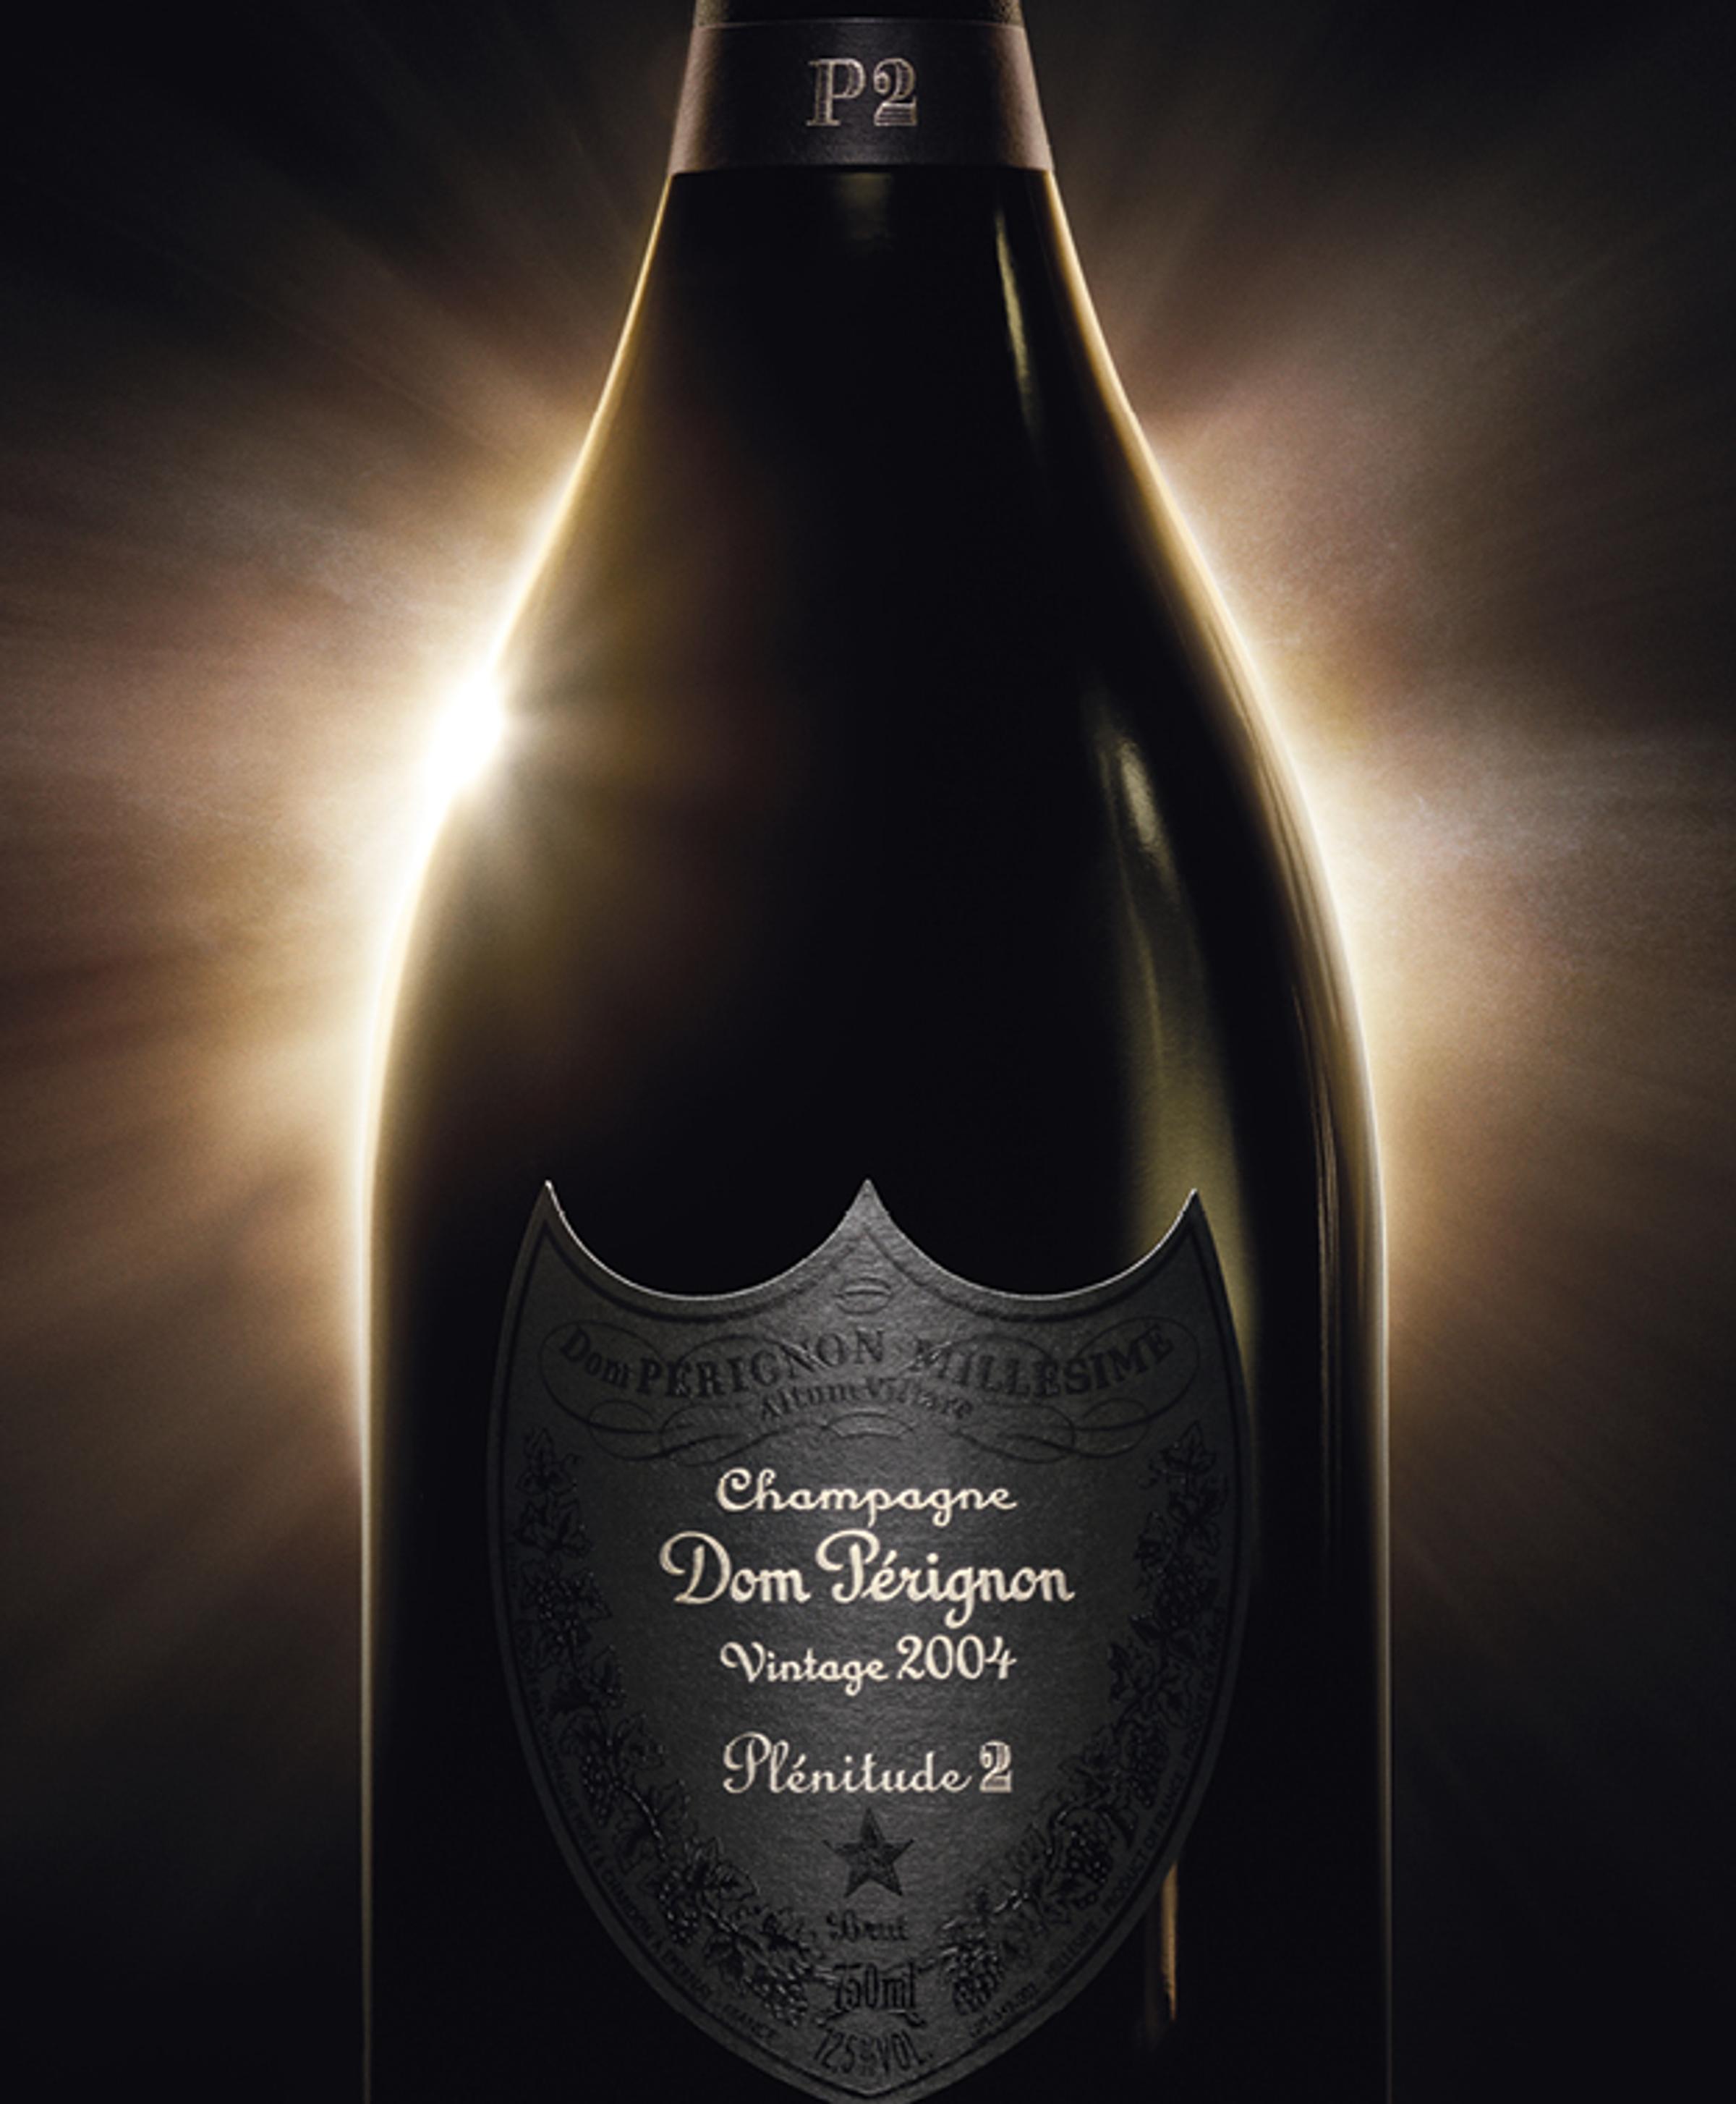 DOM PERIGNON MILLESIME ALTUM VILLARE DOM PERIGNON - Moet Hennessy USA, Inc.  Trademark Registration